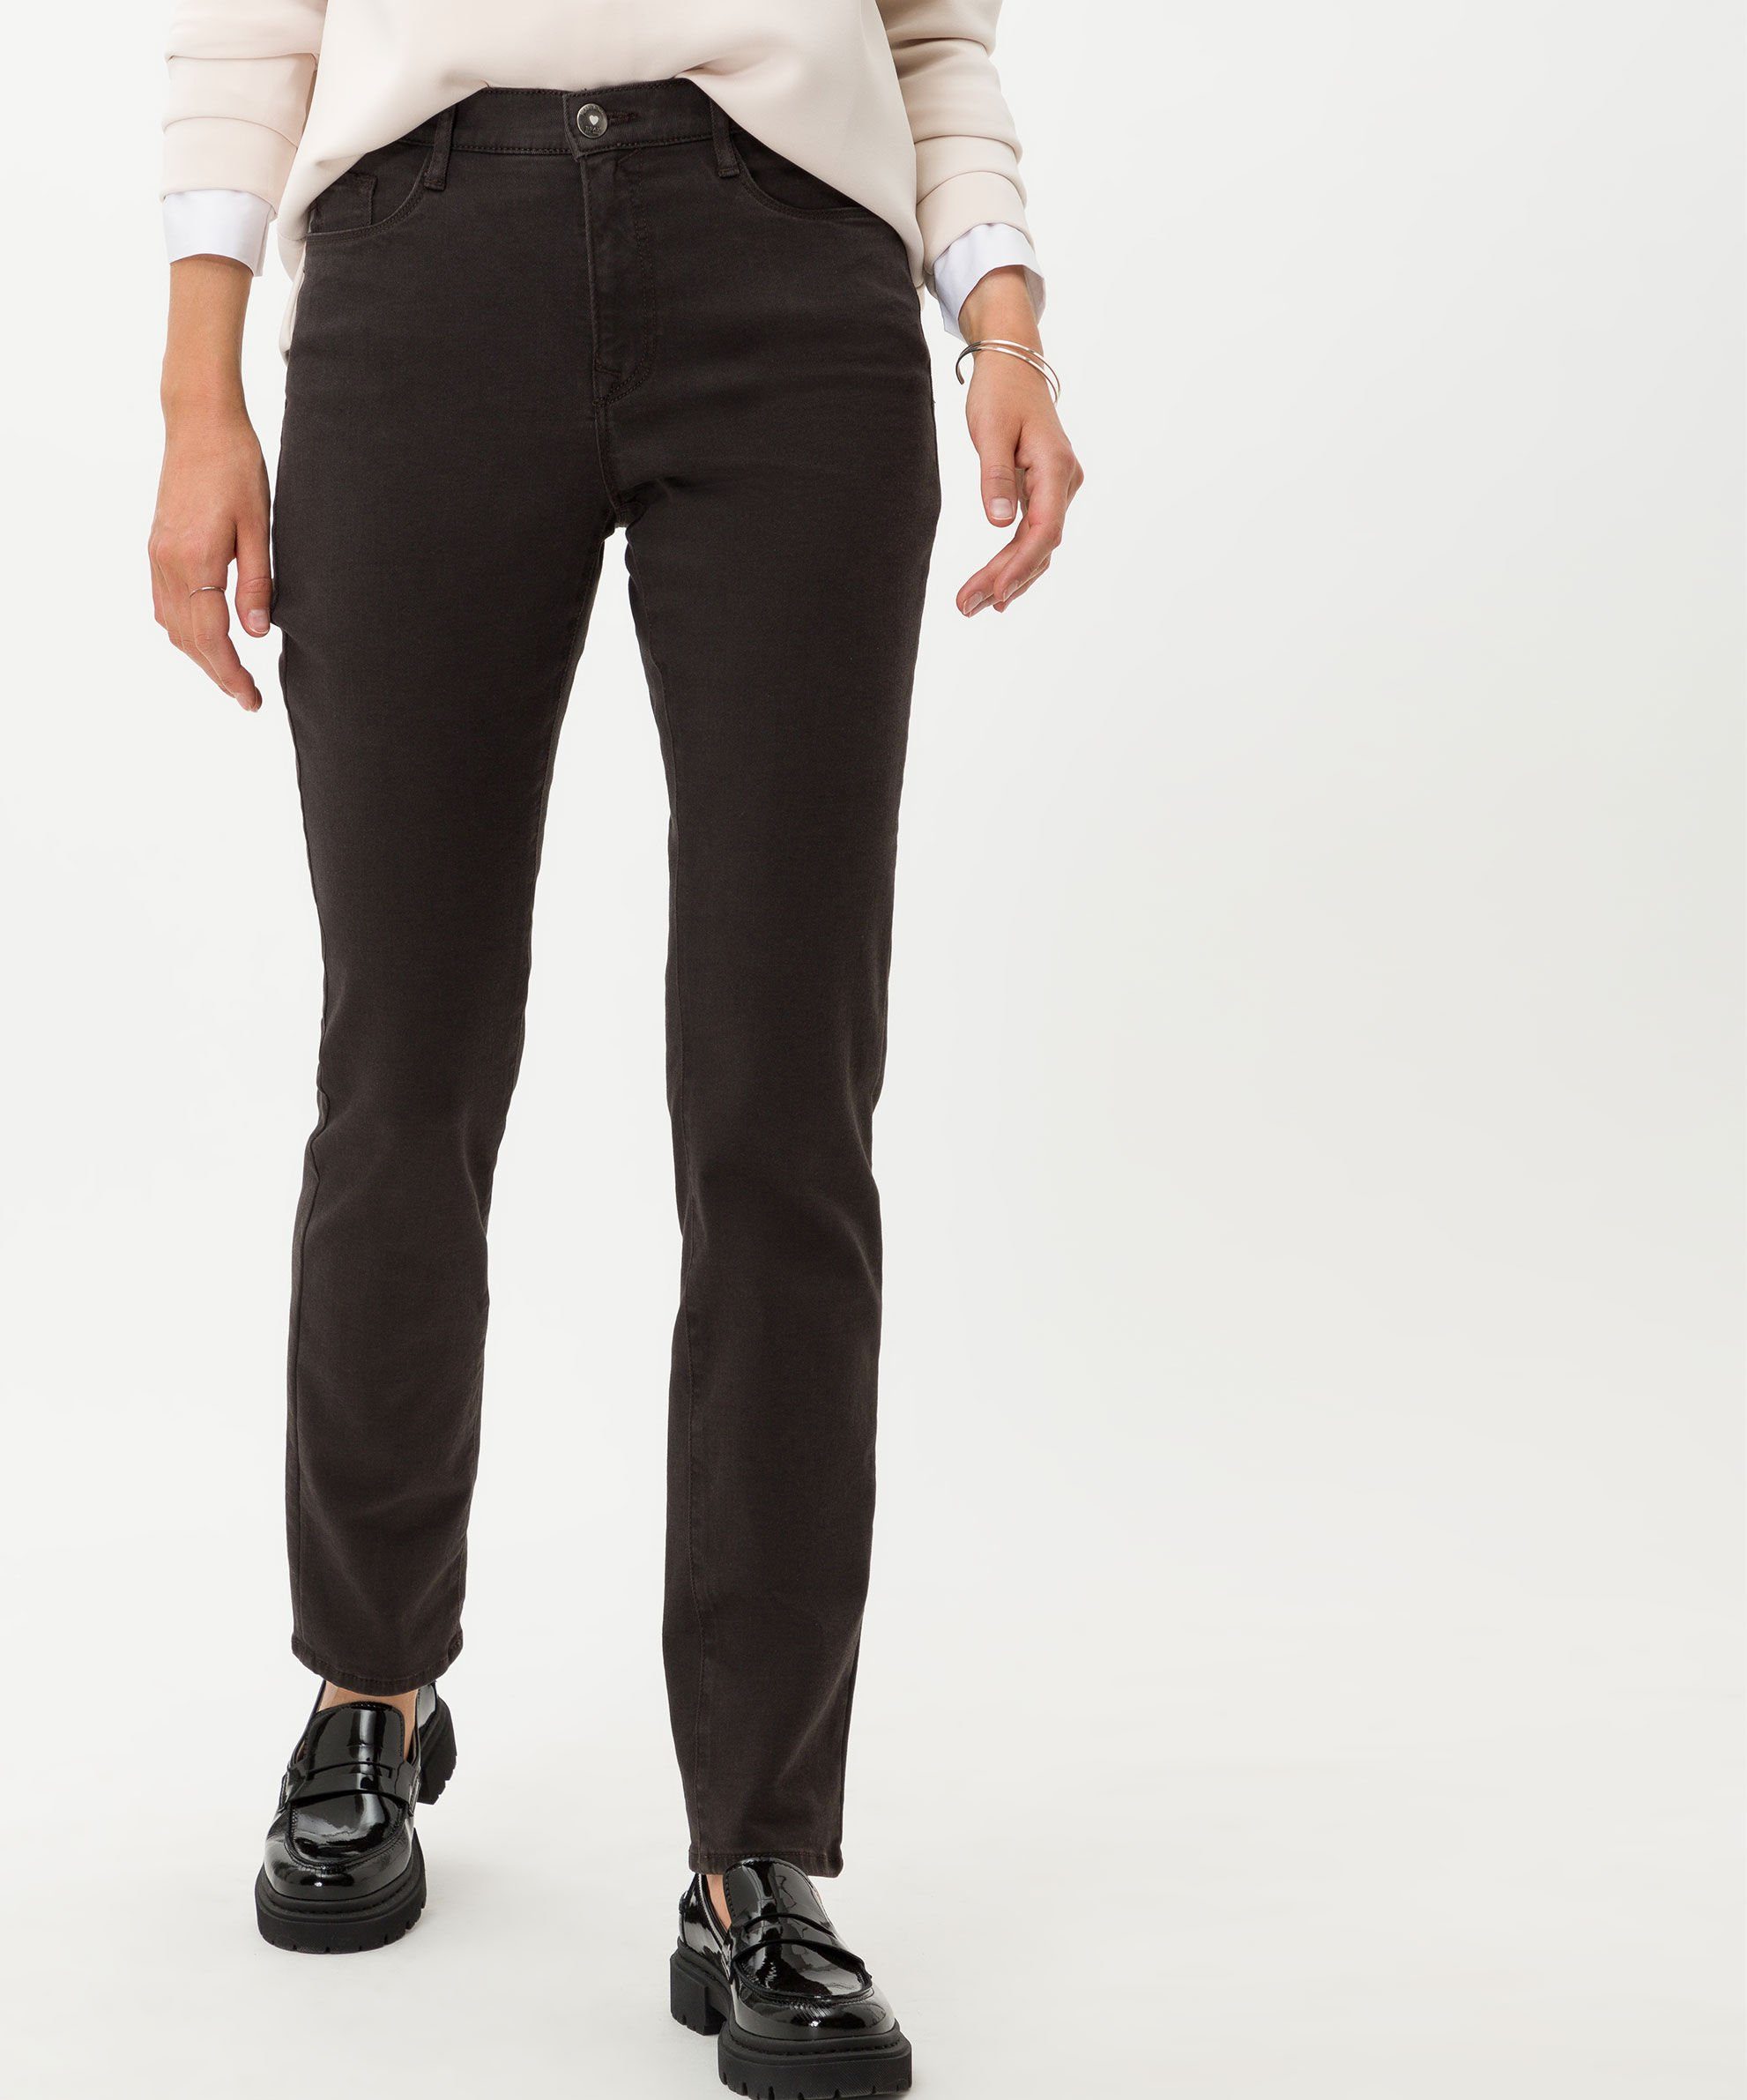 Brax 5-Pocket-Jeans Style Carola Jeans brown Damen braun